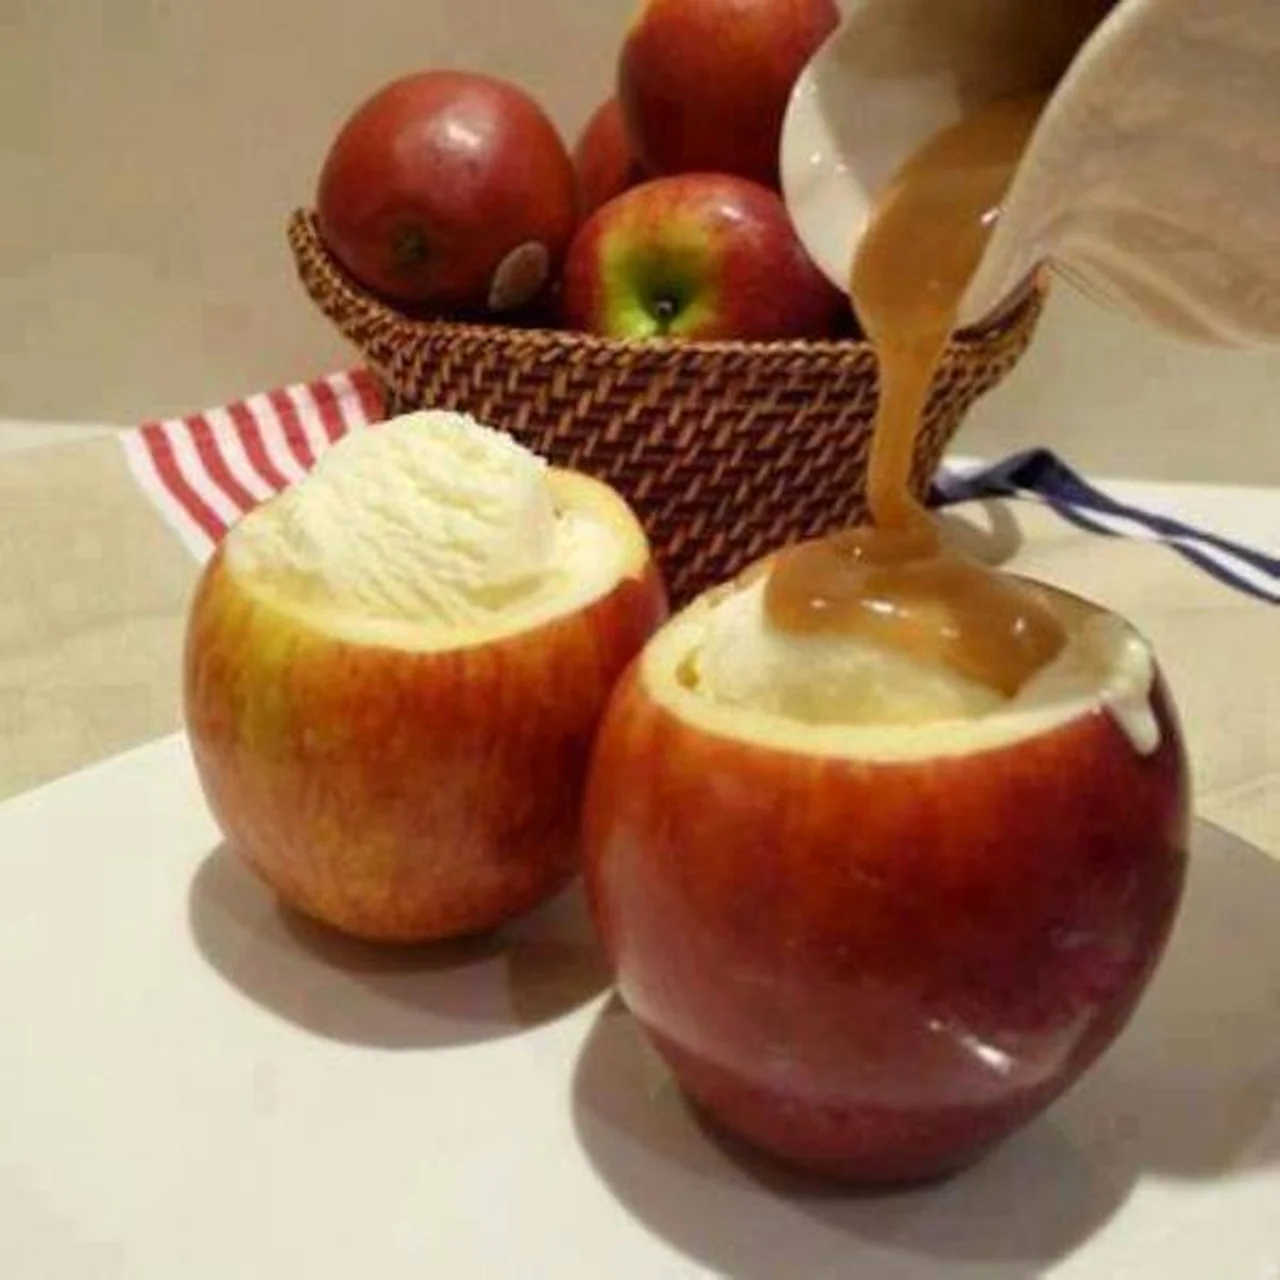 Lody podane w jabłku - super pomysł